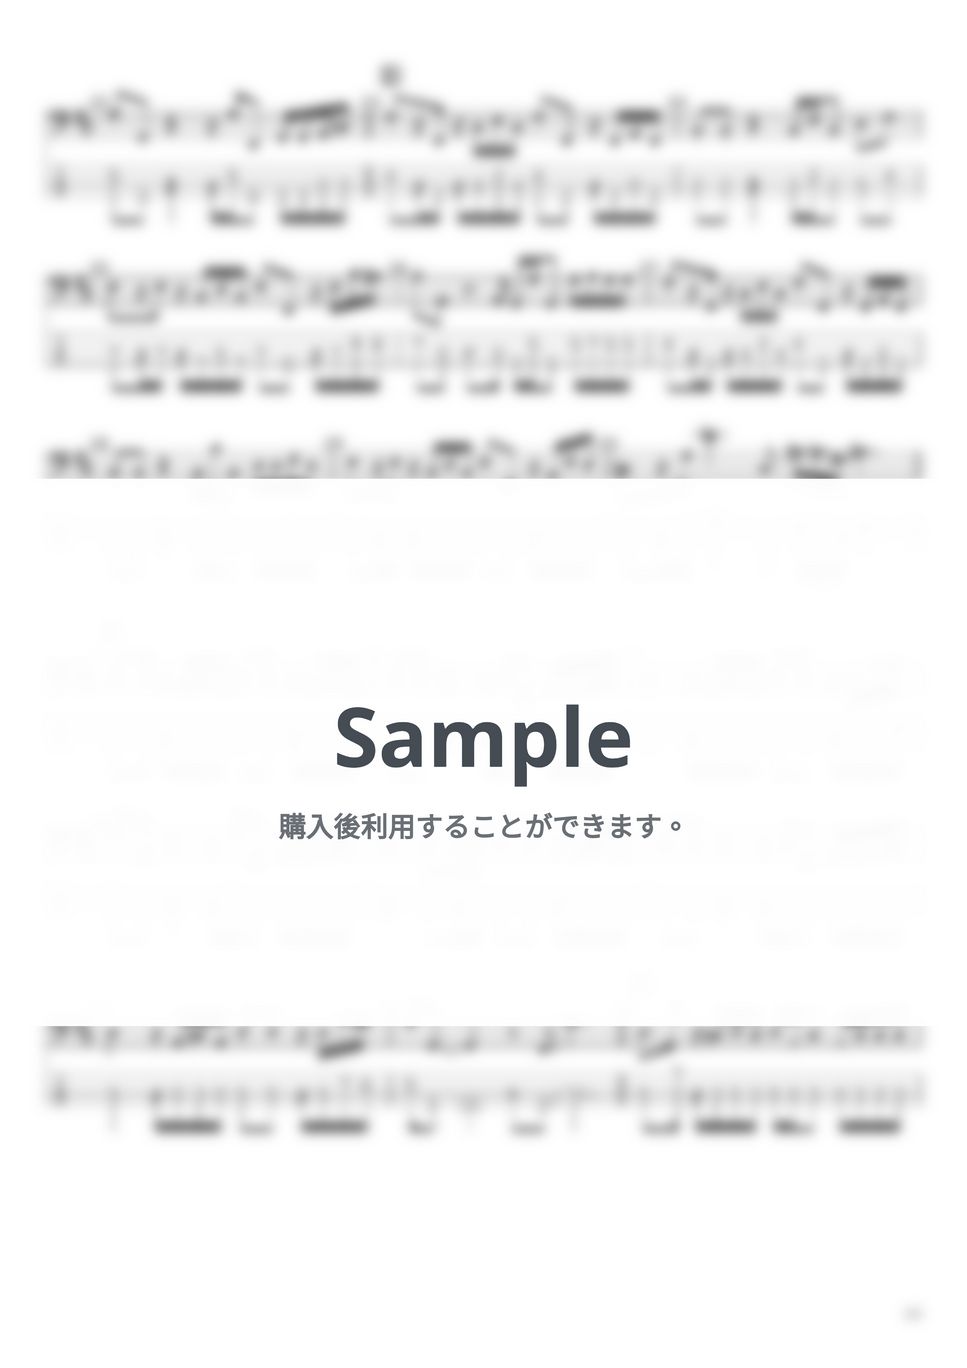 Official髭男dism - ペンディング・マシーン(4弦ver) by たぶべー@財布に優しいベース用楽譜屋さん